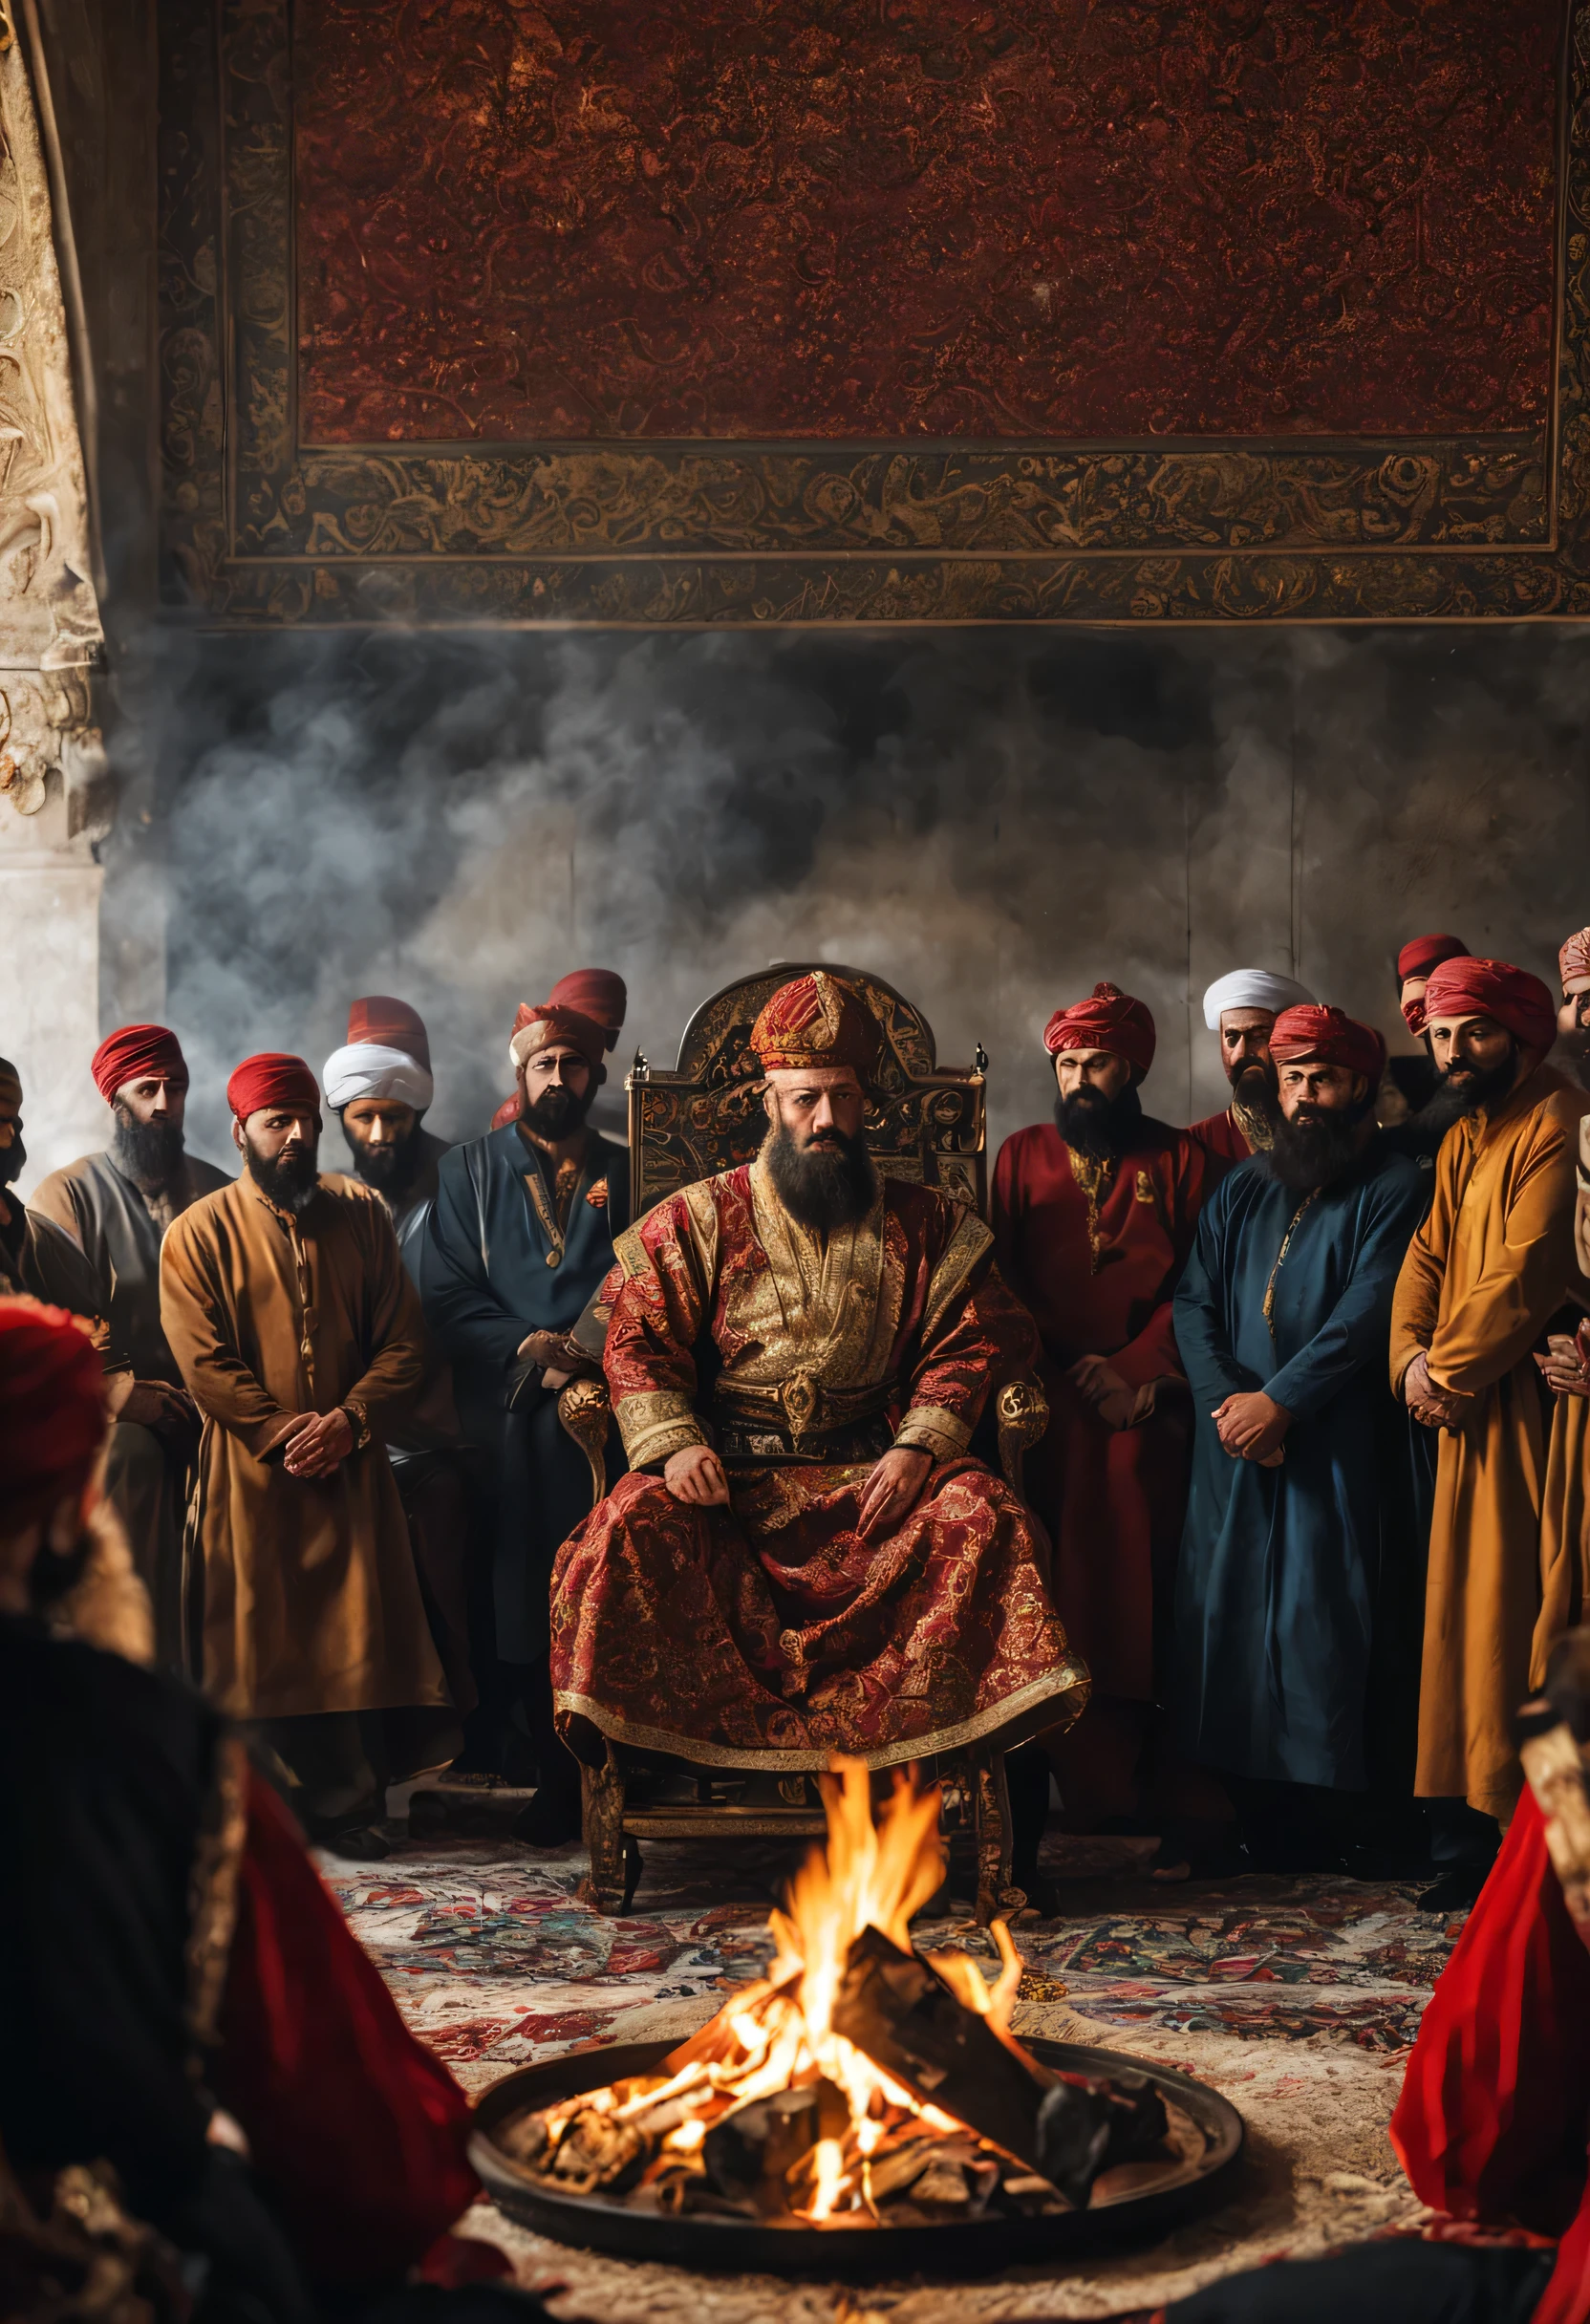 El sultán mehmet el conquistador reúne ante él a los miembros de la secta hurufi, alrededor del fuego los mira con ojos severos, Asegurémonos de que el Sultán Mehmet el Conquistador vista la ropa del sultán de su época y parezca un emperador y un héroe., temática oscura